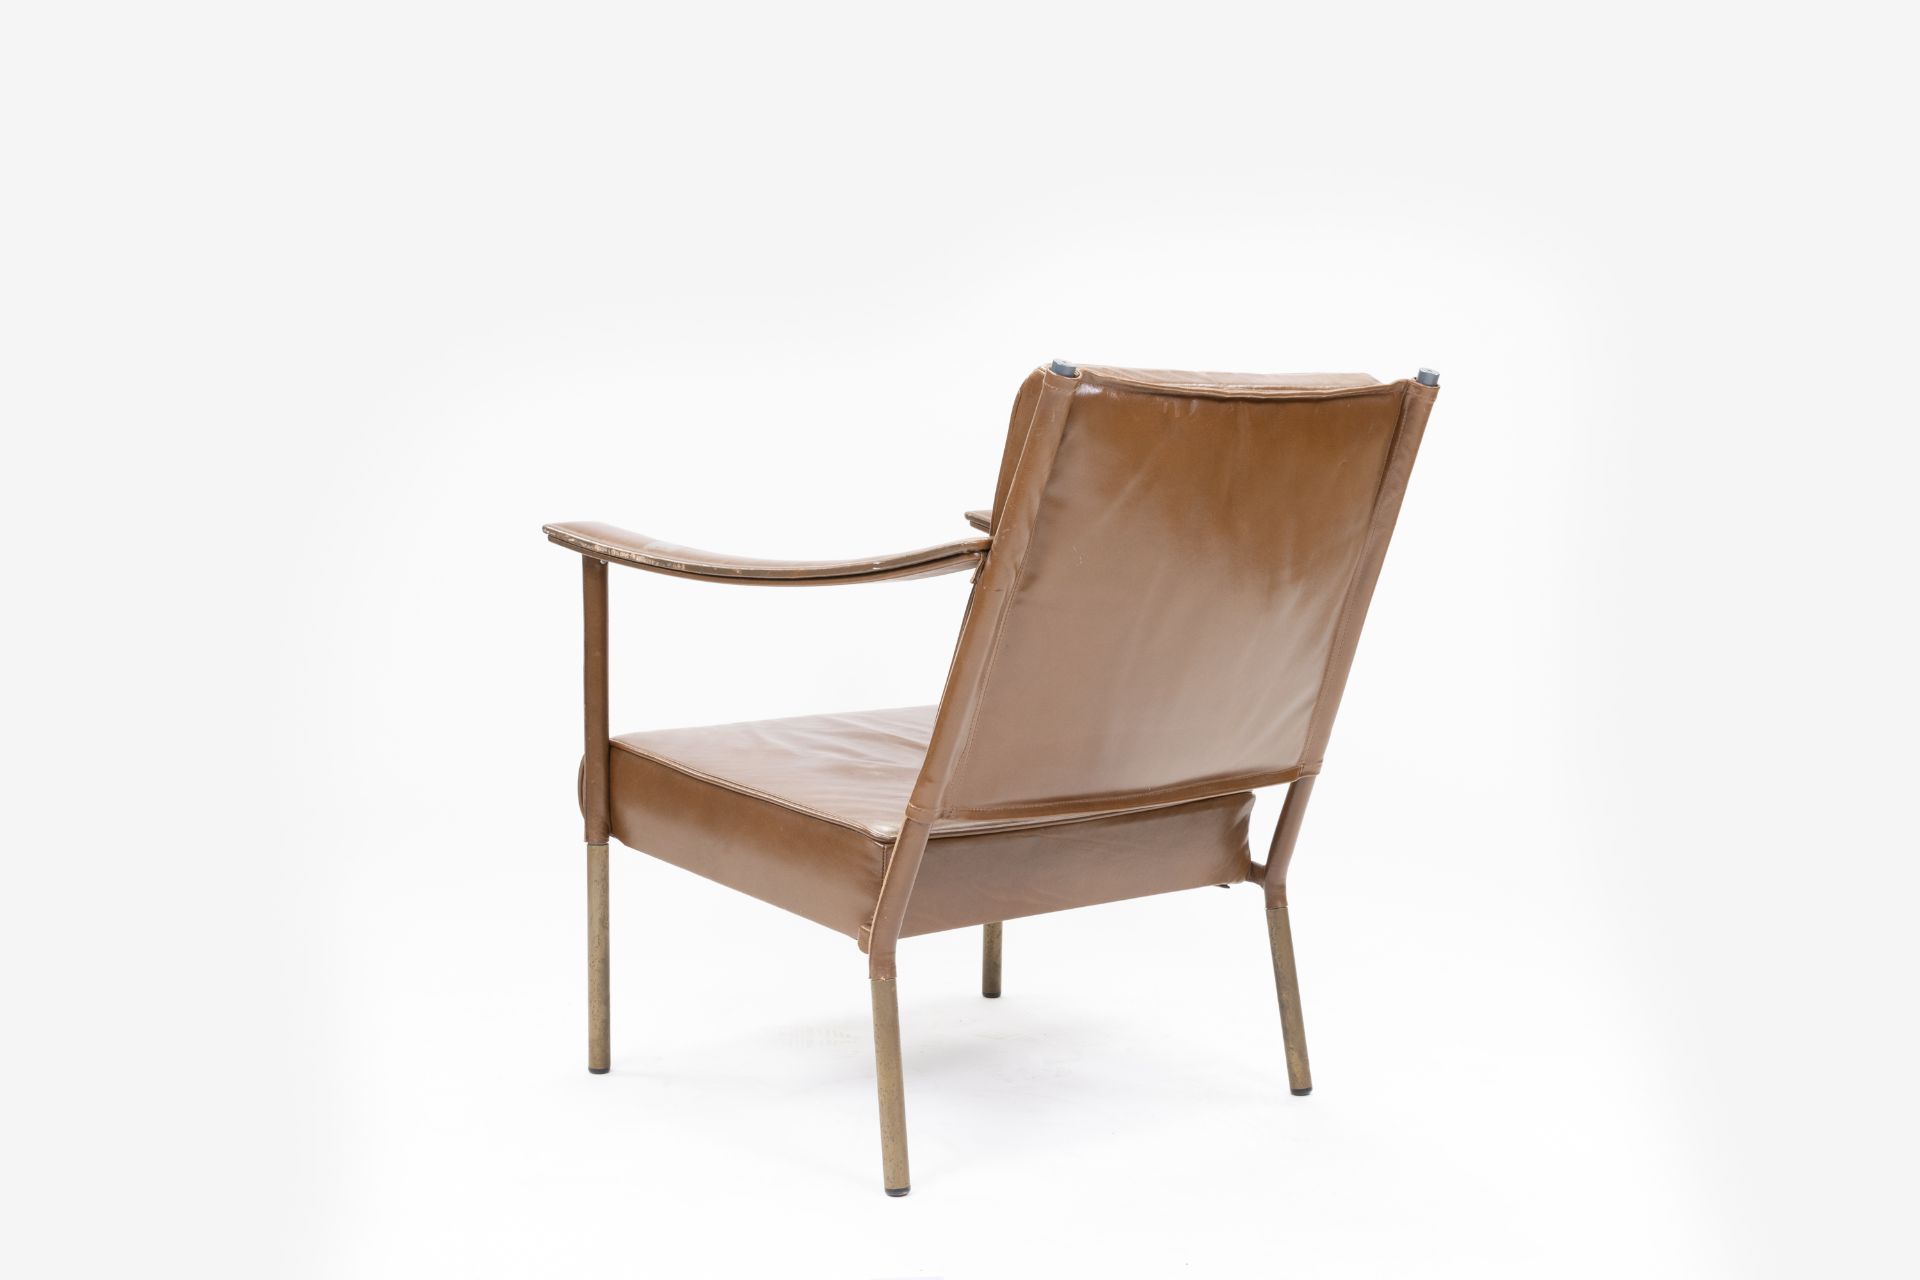 Soane Britain Crillon Chair - Image 6 of 8